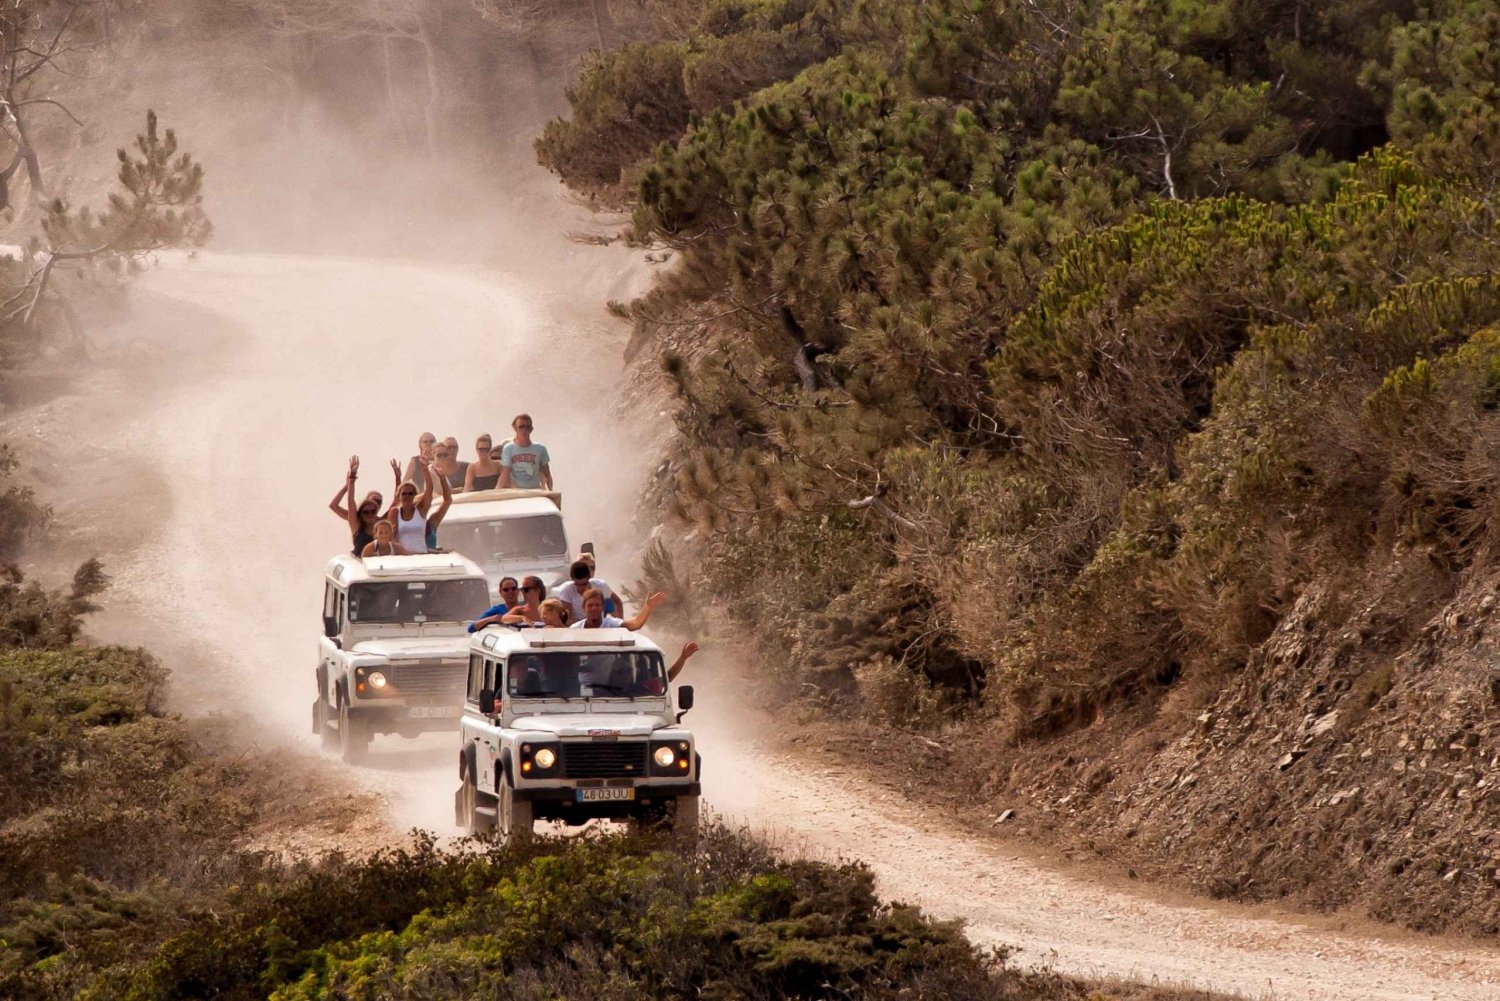 Safari en Jeep con Visita a Destilería y Almuerzo